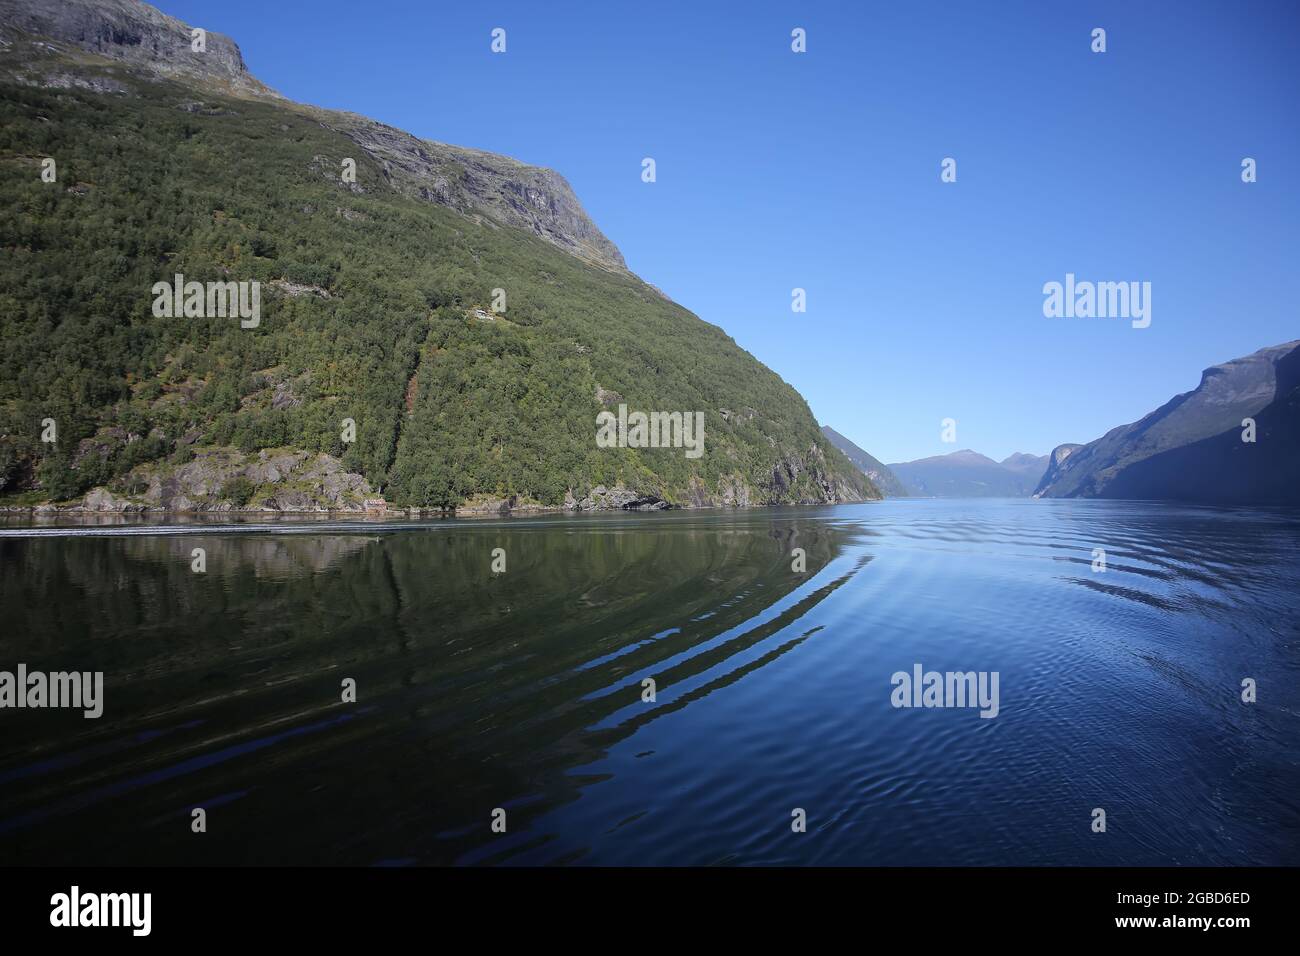 Crociera panoramica lungo il fiordo di Geiranger. Bellissimo paesaggio con riflessi delle montagne in una tranquilla giornata estiva, fiordi norvegesi, Norvegia. Foto Stock